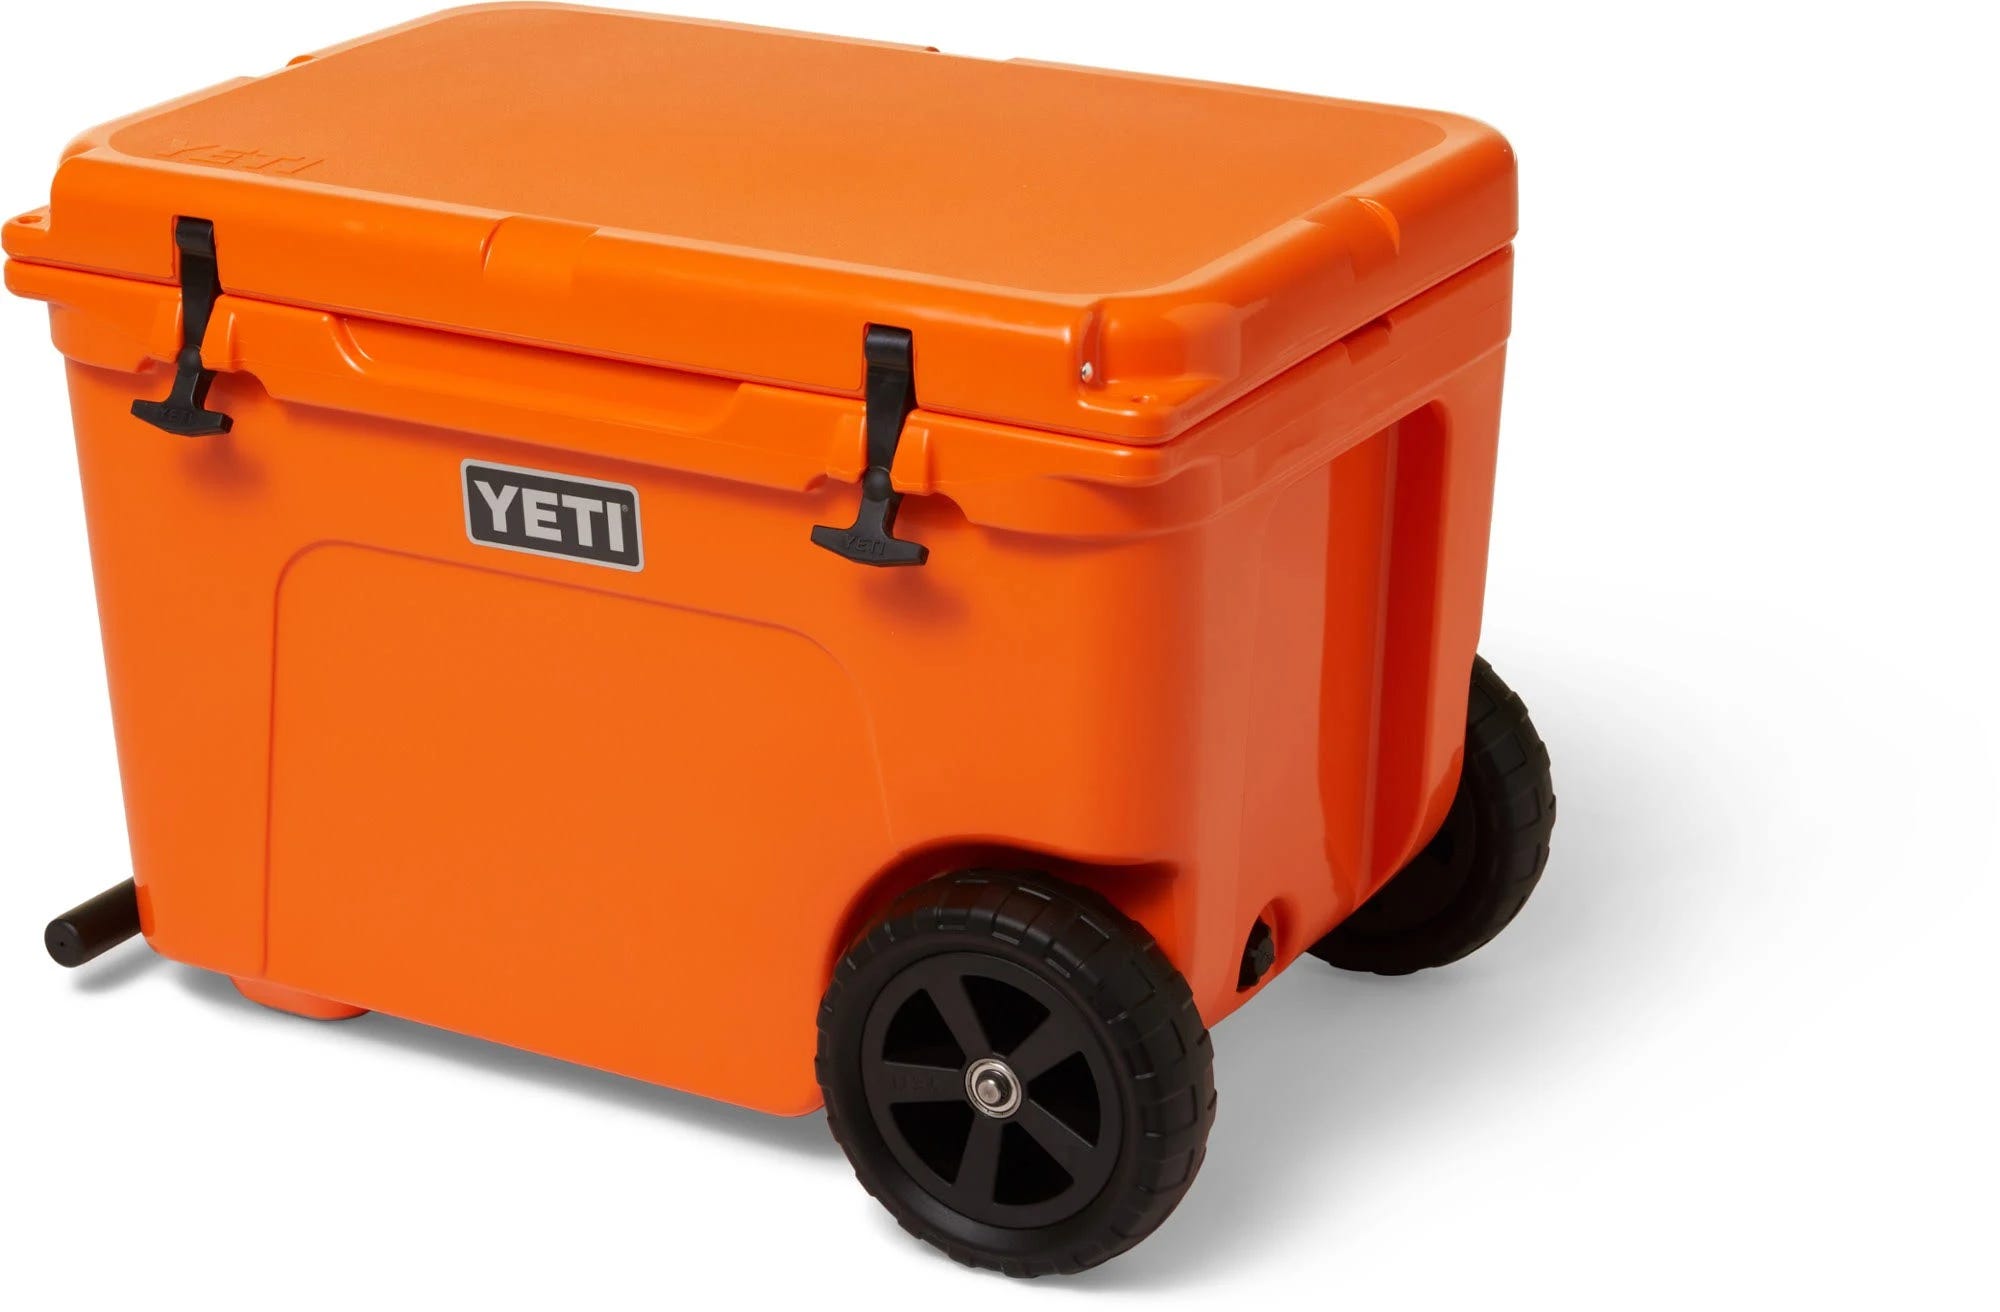 Yeti Tundra Haul Wheeled Cooler - Orange and Tough as Guts | Image